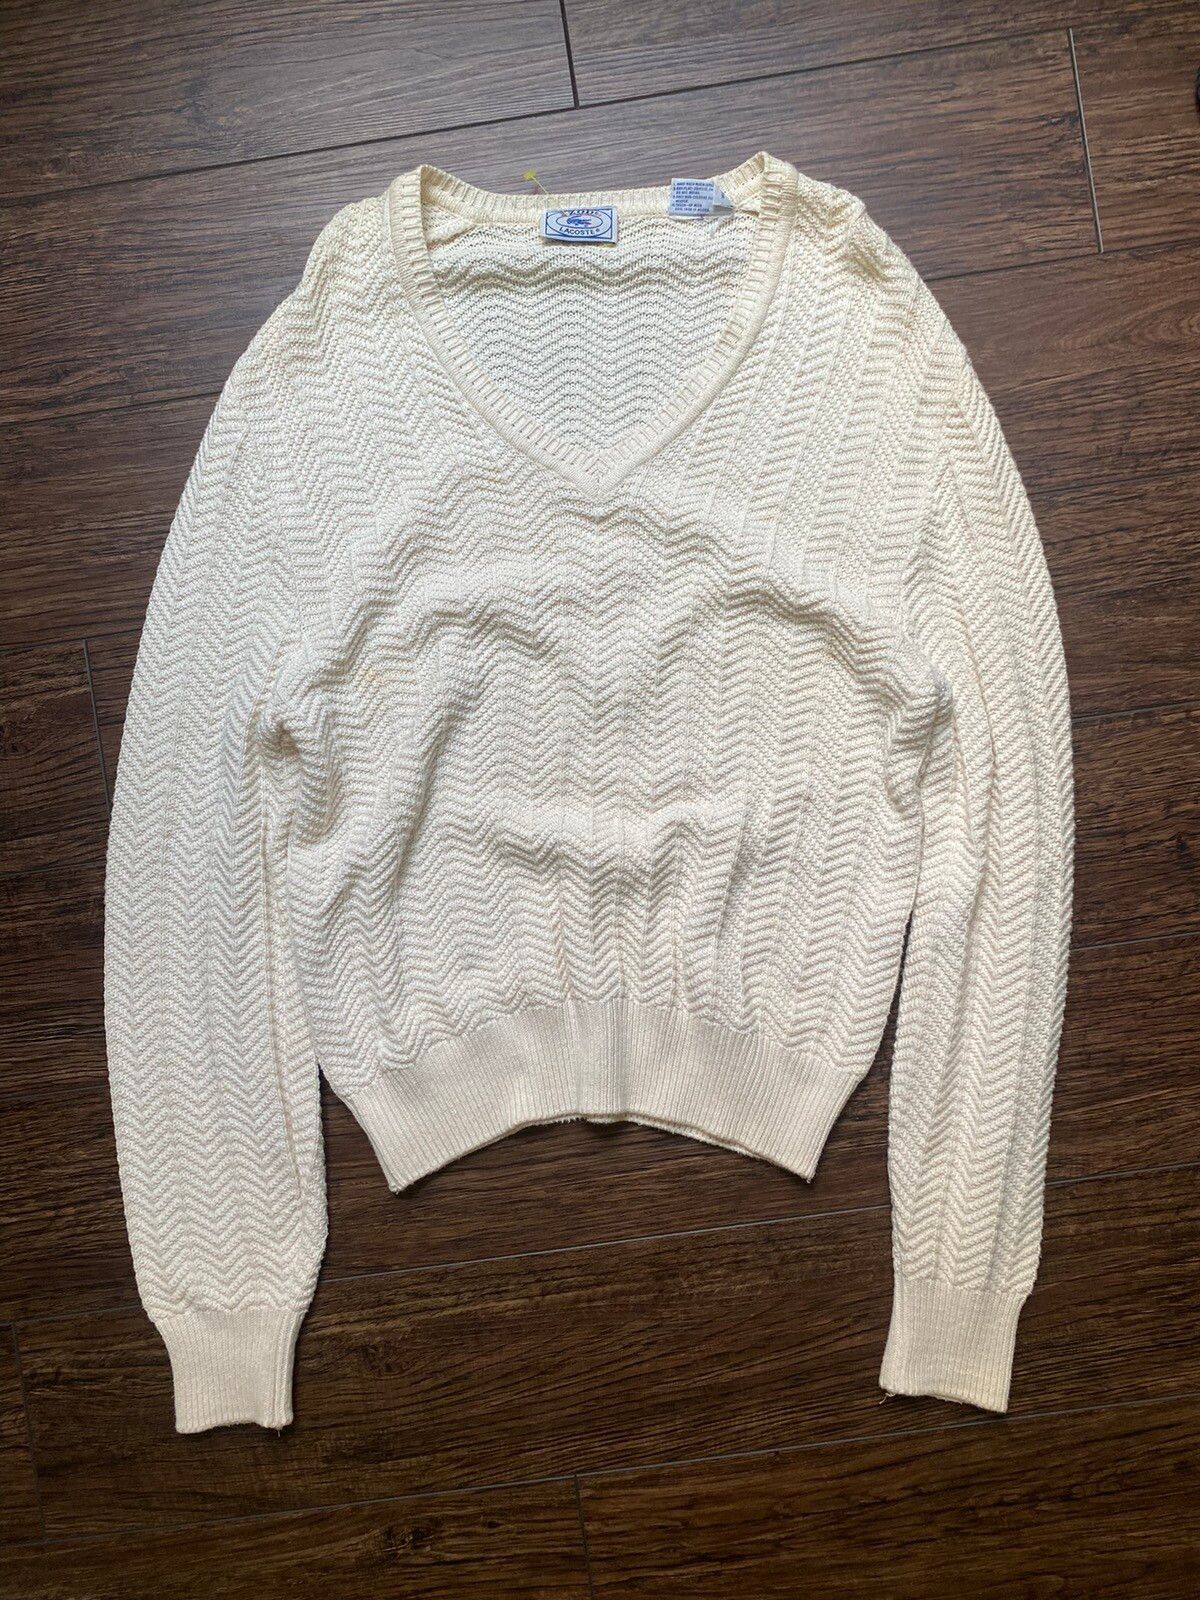 Vintage Vintage 60s Lacoste Knit Sweatshirt Size US M / EU 48-50 / 2 - 2 Preview